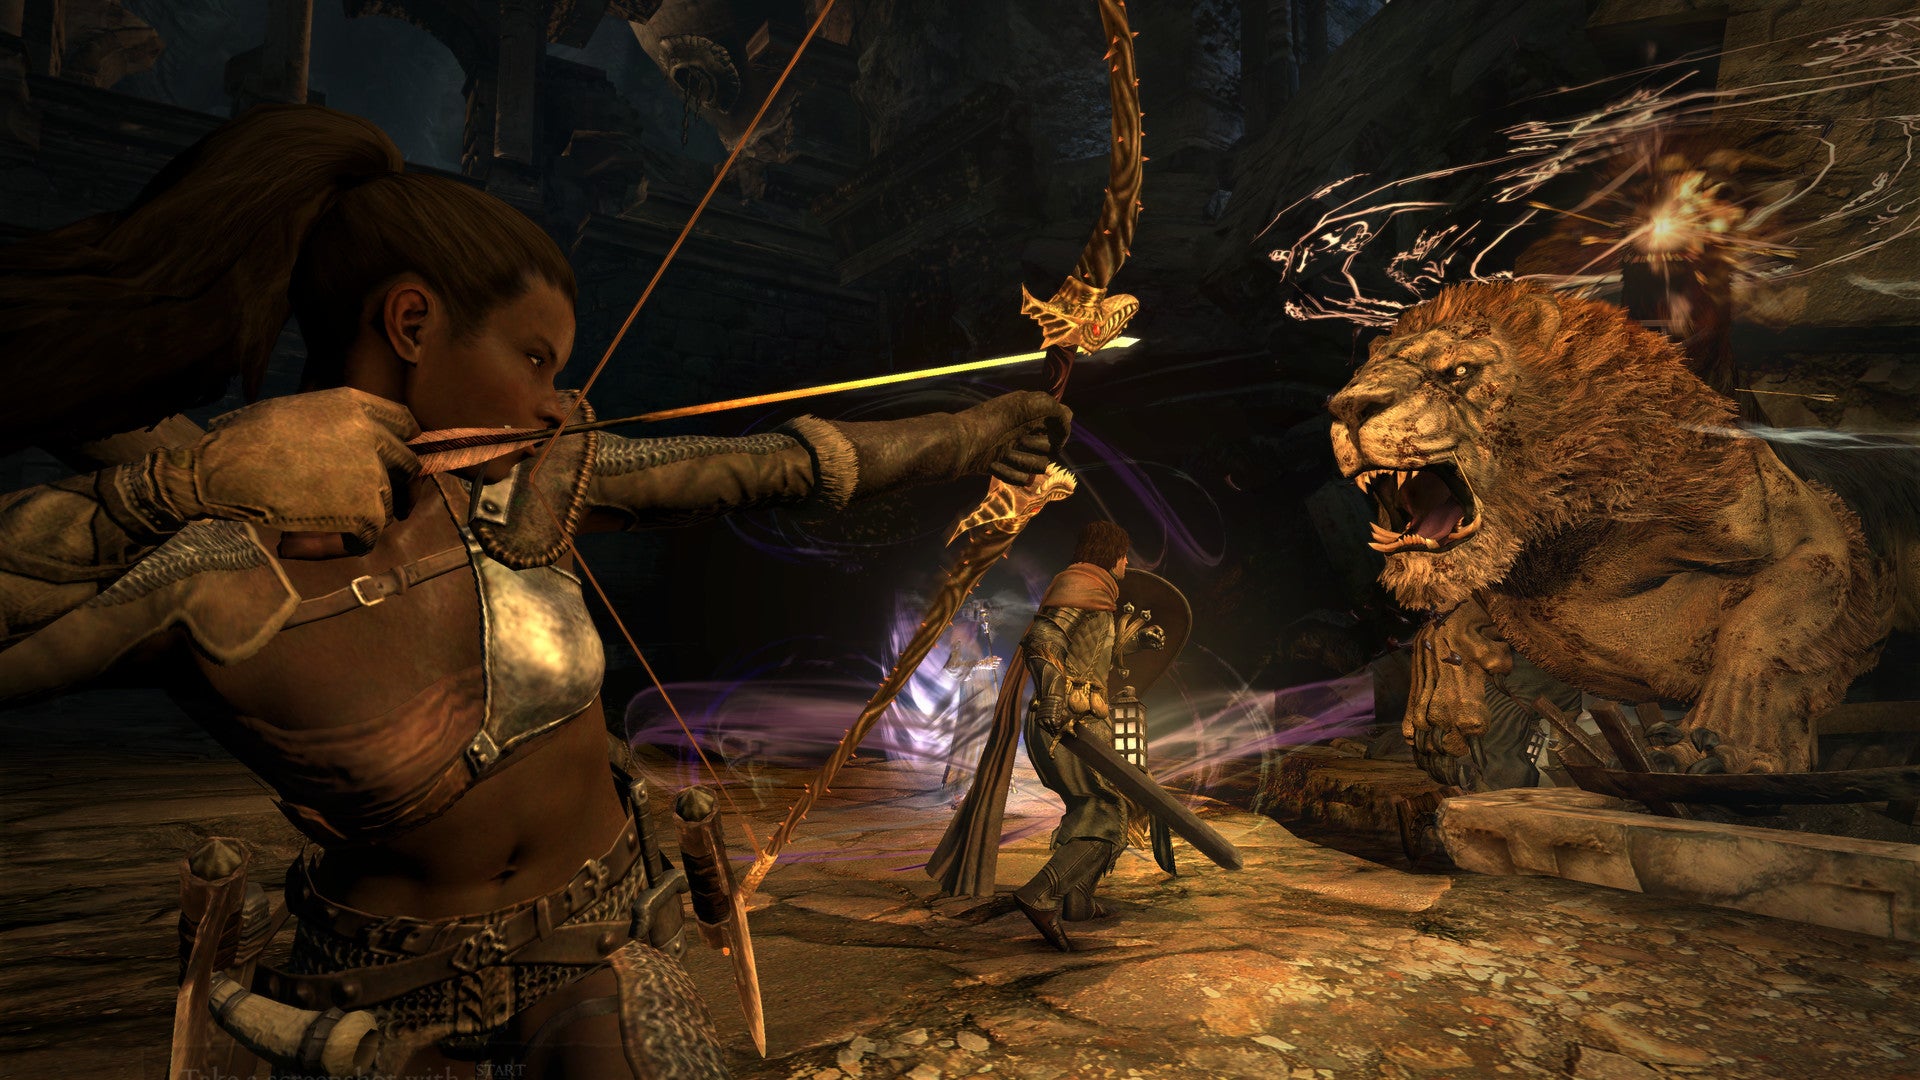 Screenshot of Dragon's Dogma: Dark Arisen gameplay with combat scene.